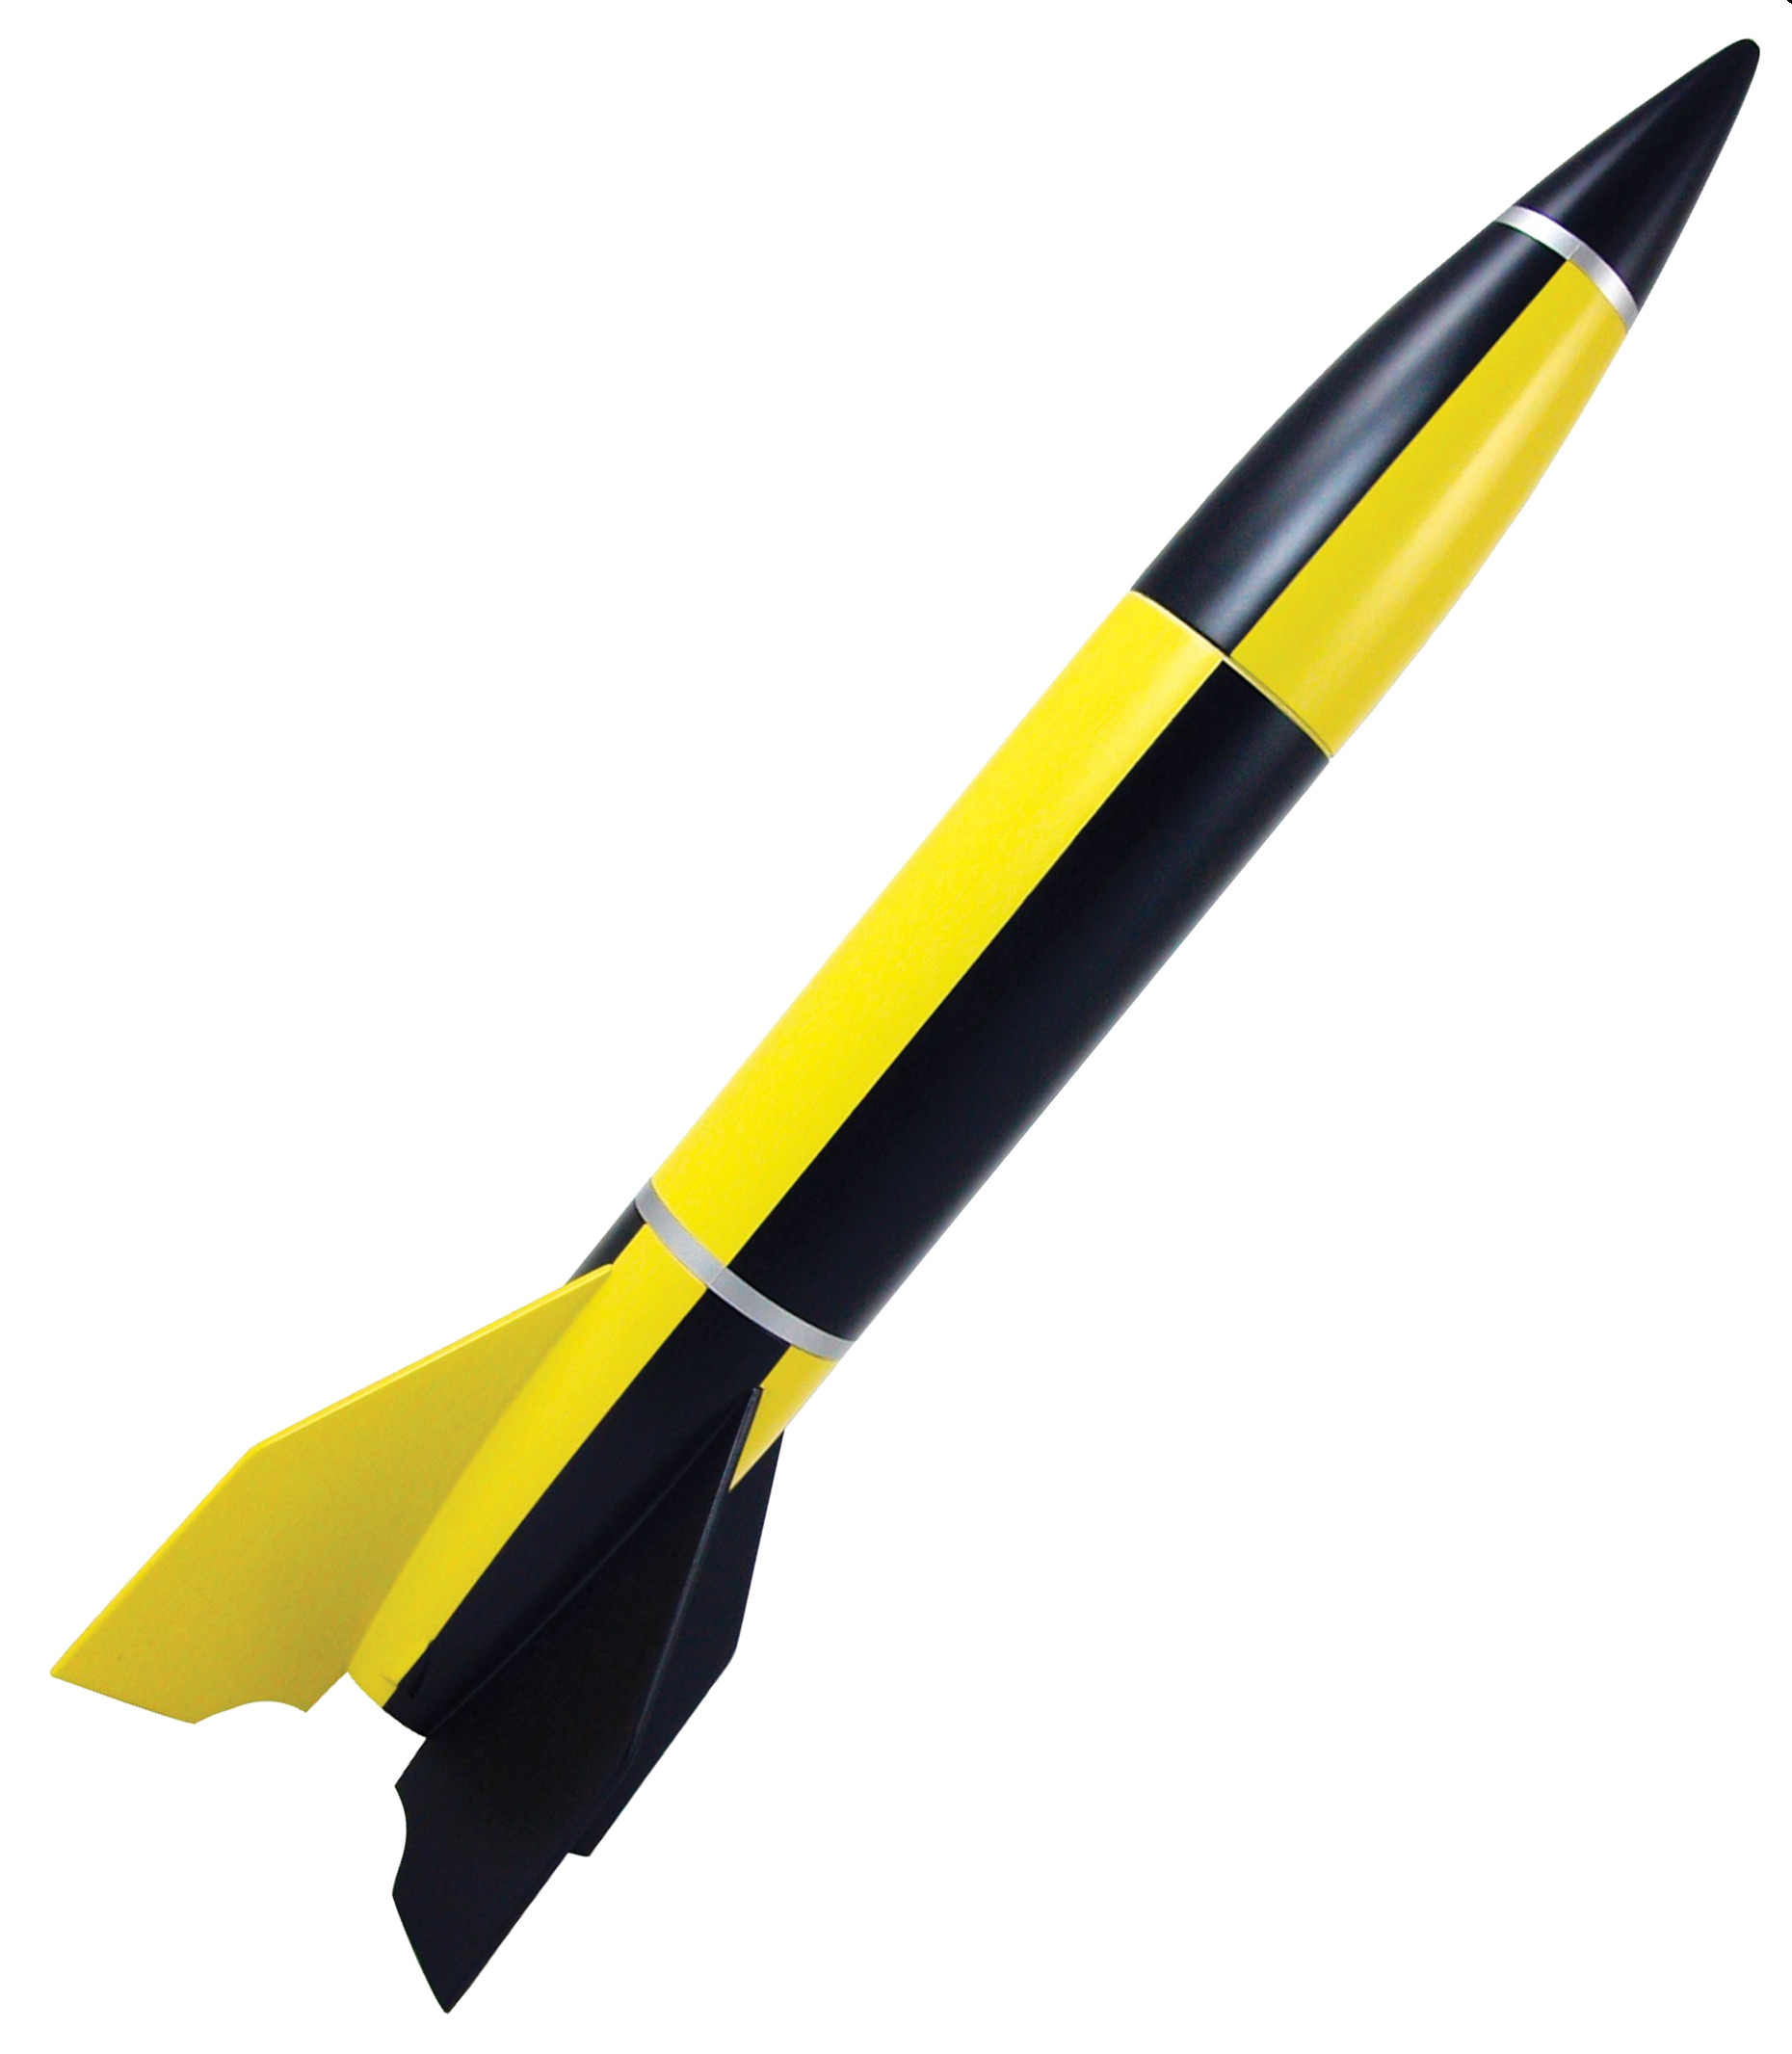 Clipart rocket model rocket. Free cliparts download clip